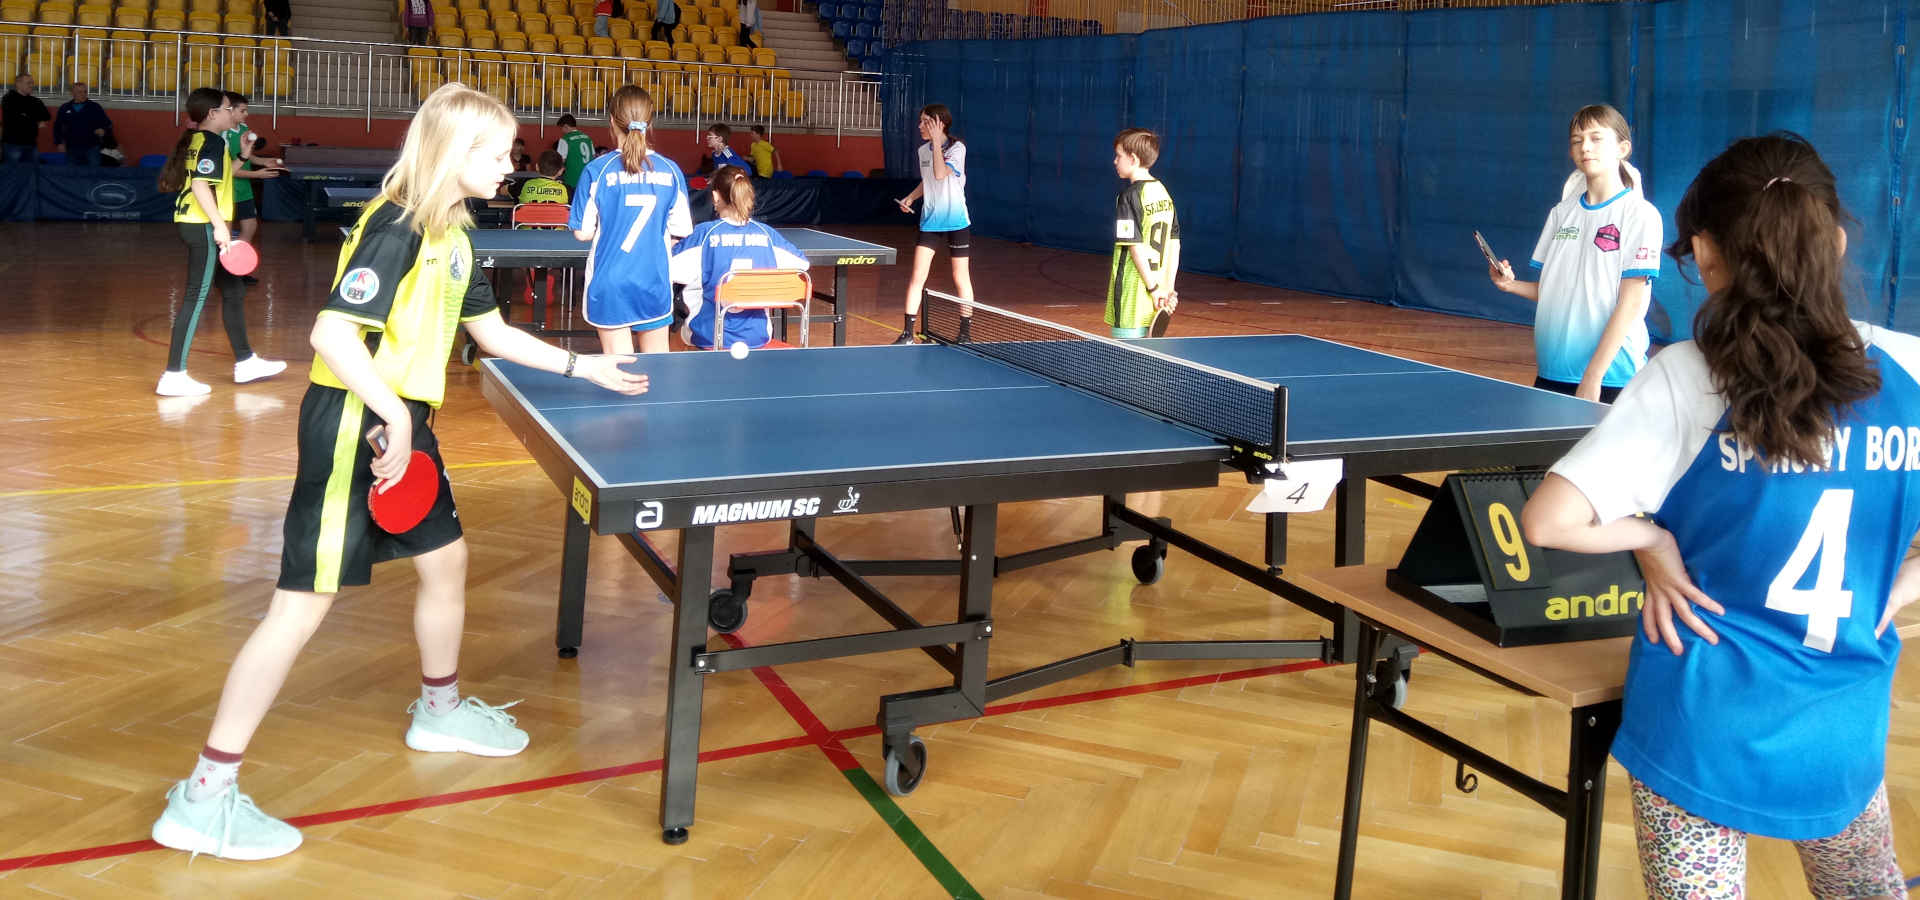 Uczestnicy turnieju podczas rozgrywki w tenisie stołowym